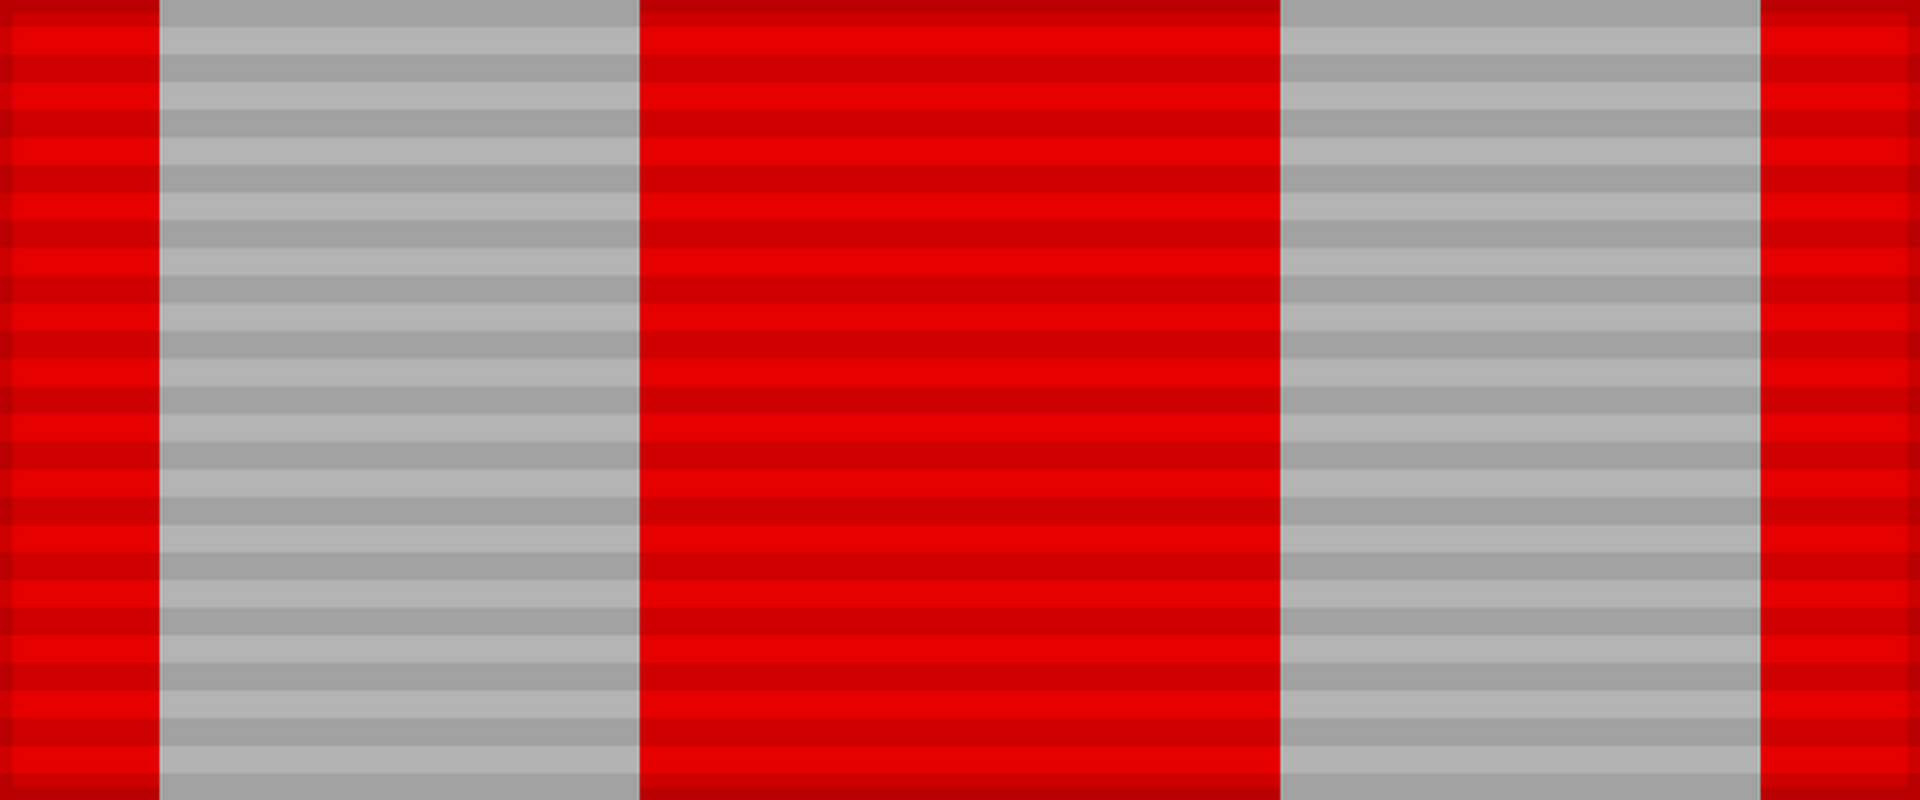 Лента медали «30 лет Советской Армии и Флота». СССР.